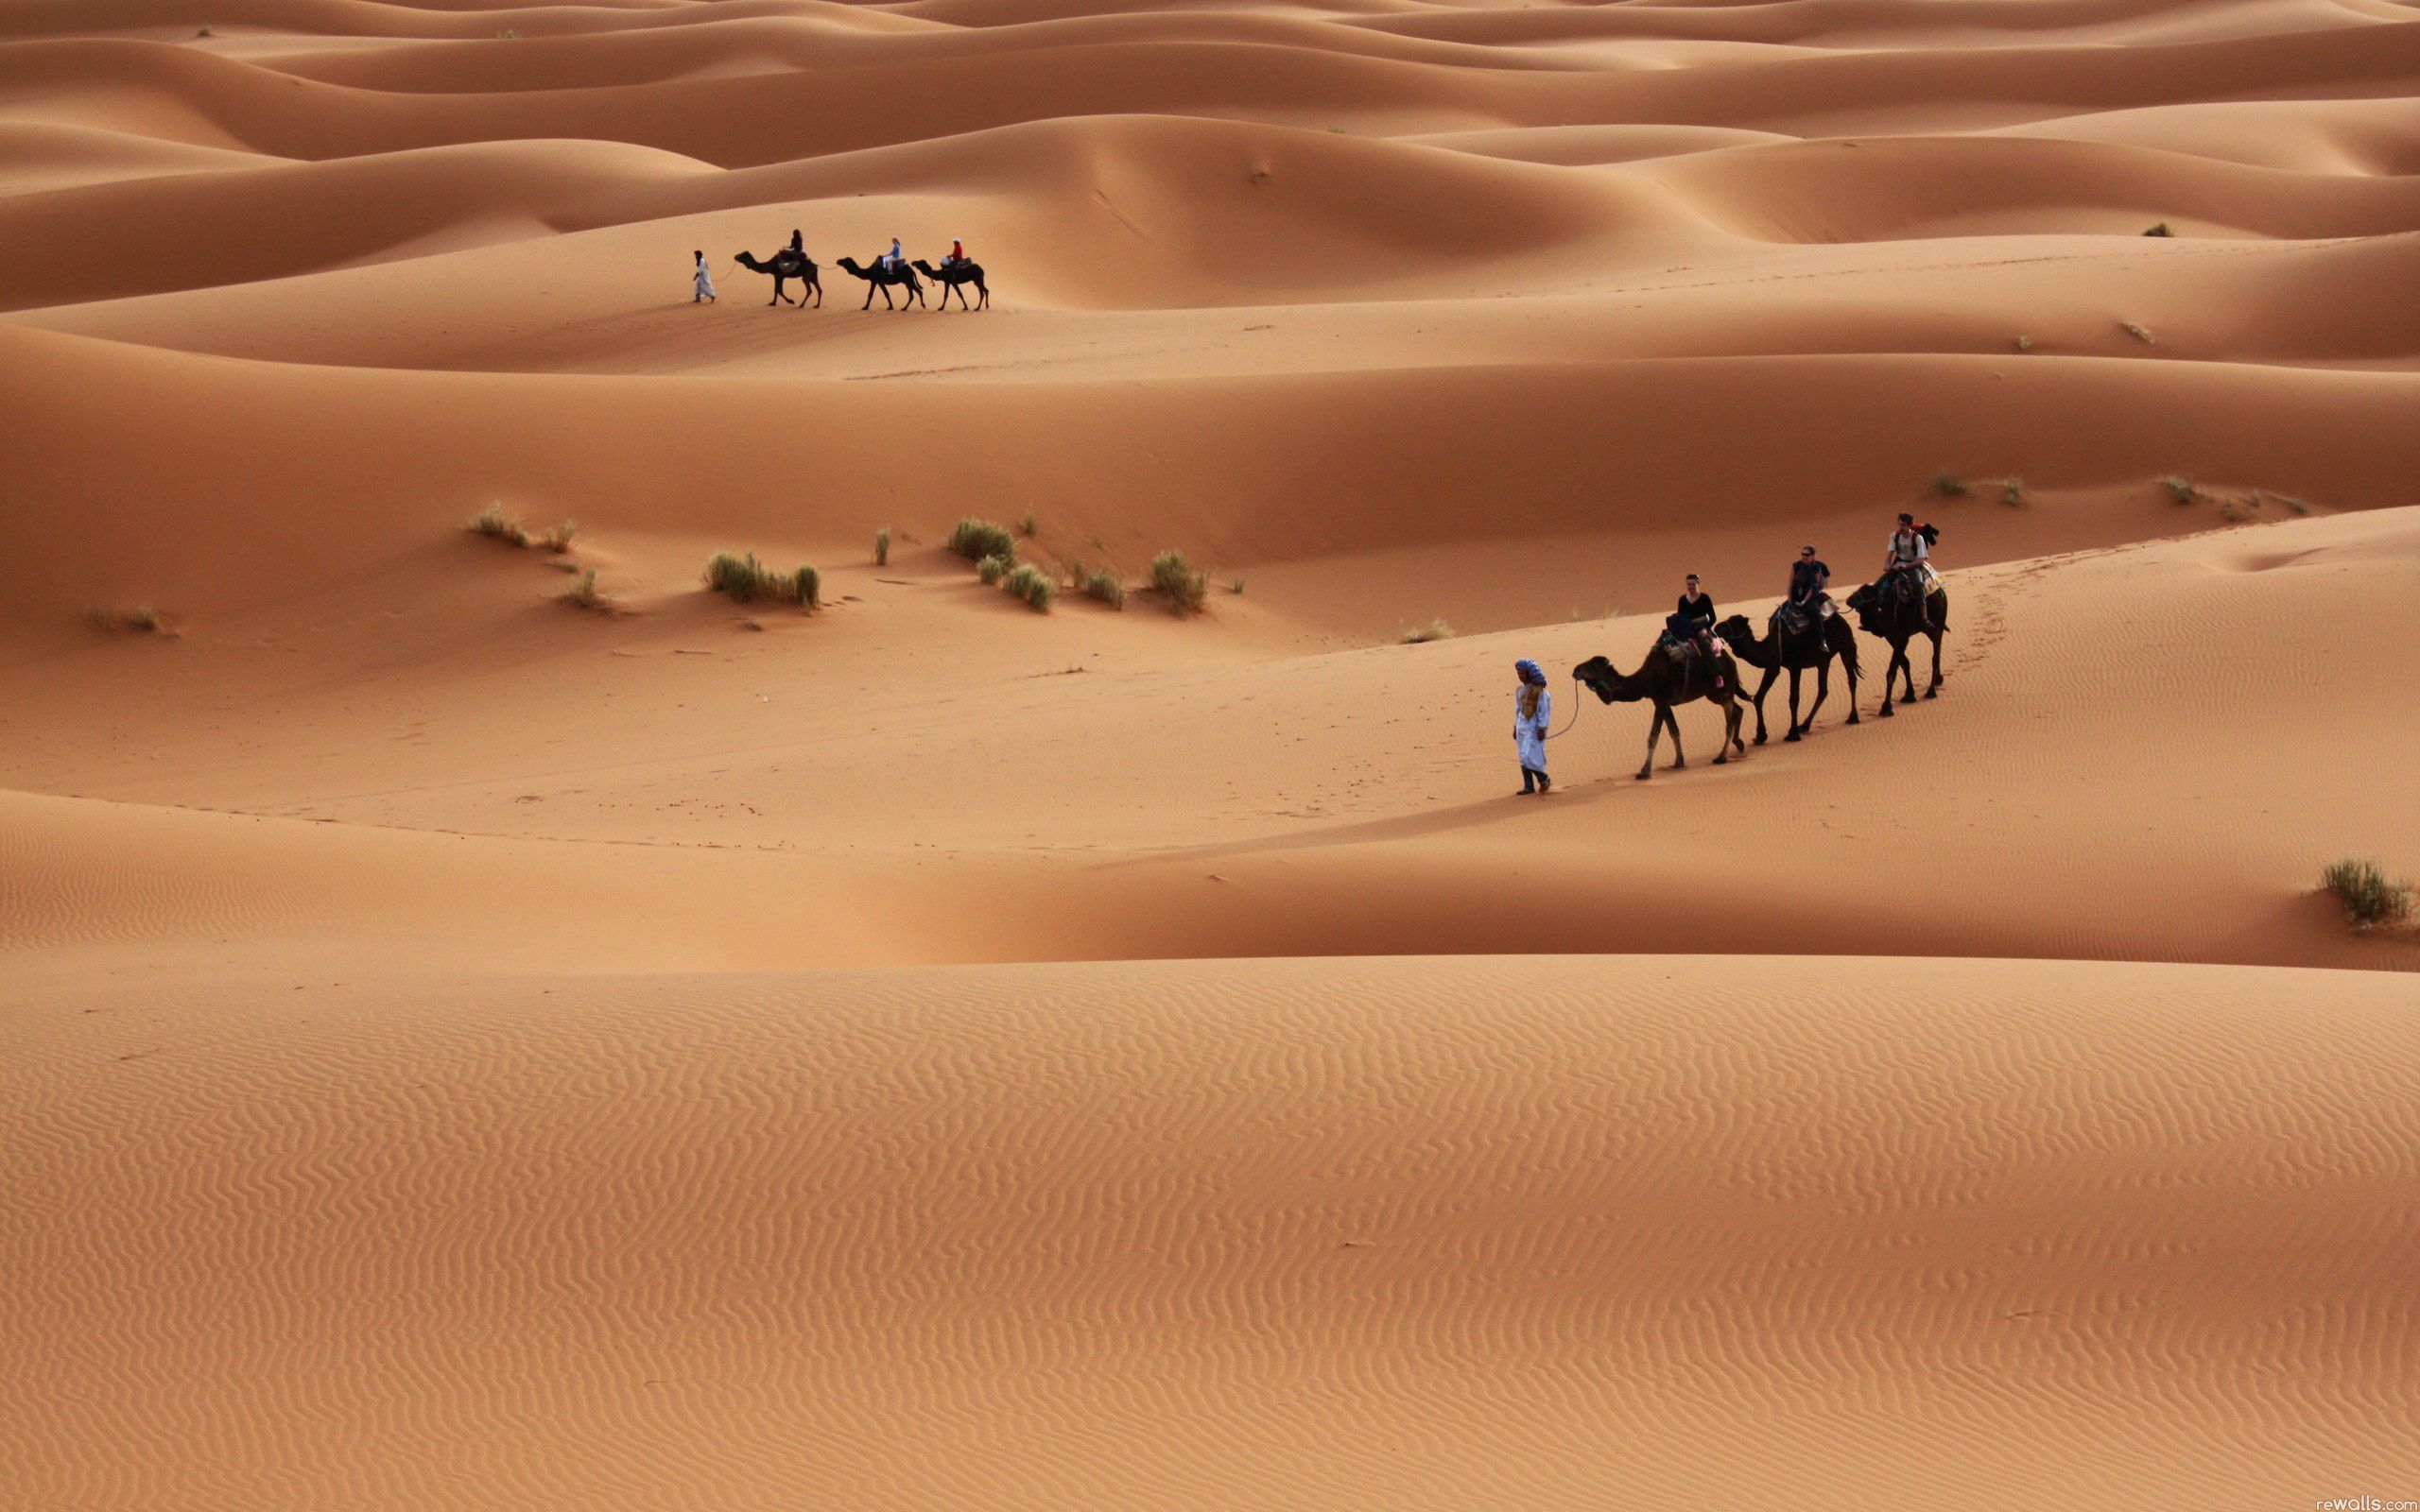 Camels in Sahara Desert Wallpaper HD. Desert tour, Tourist spots, Visit marrakech